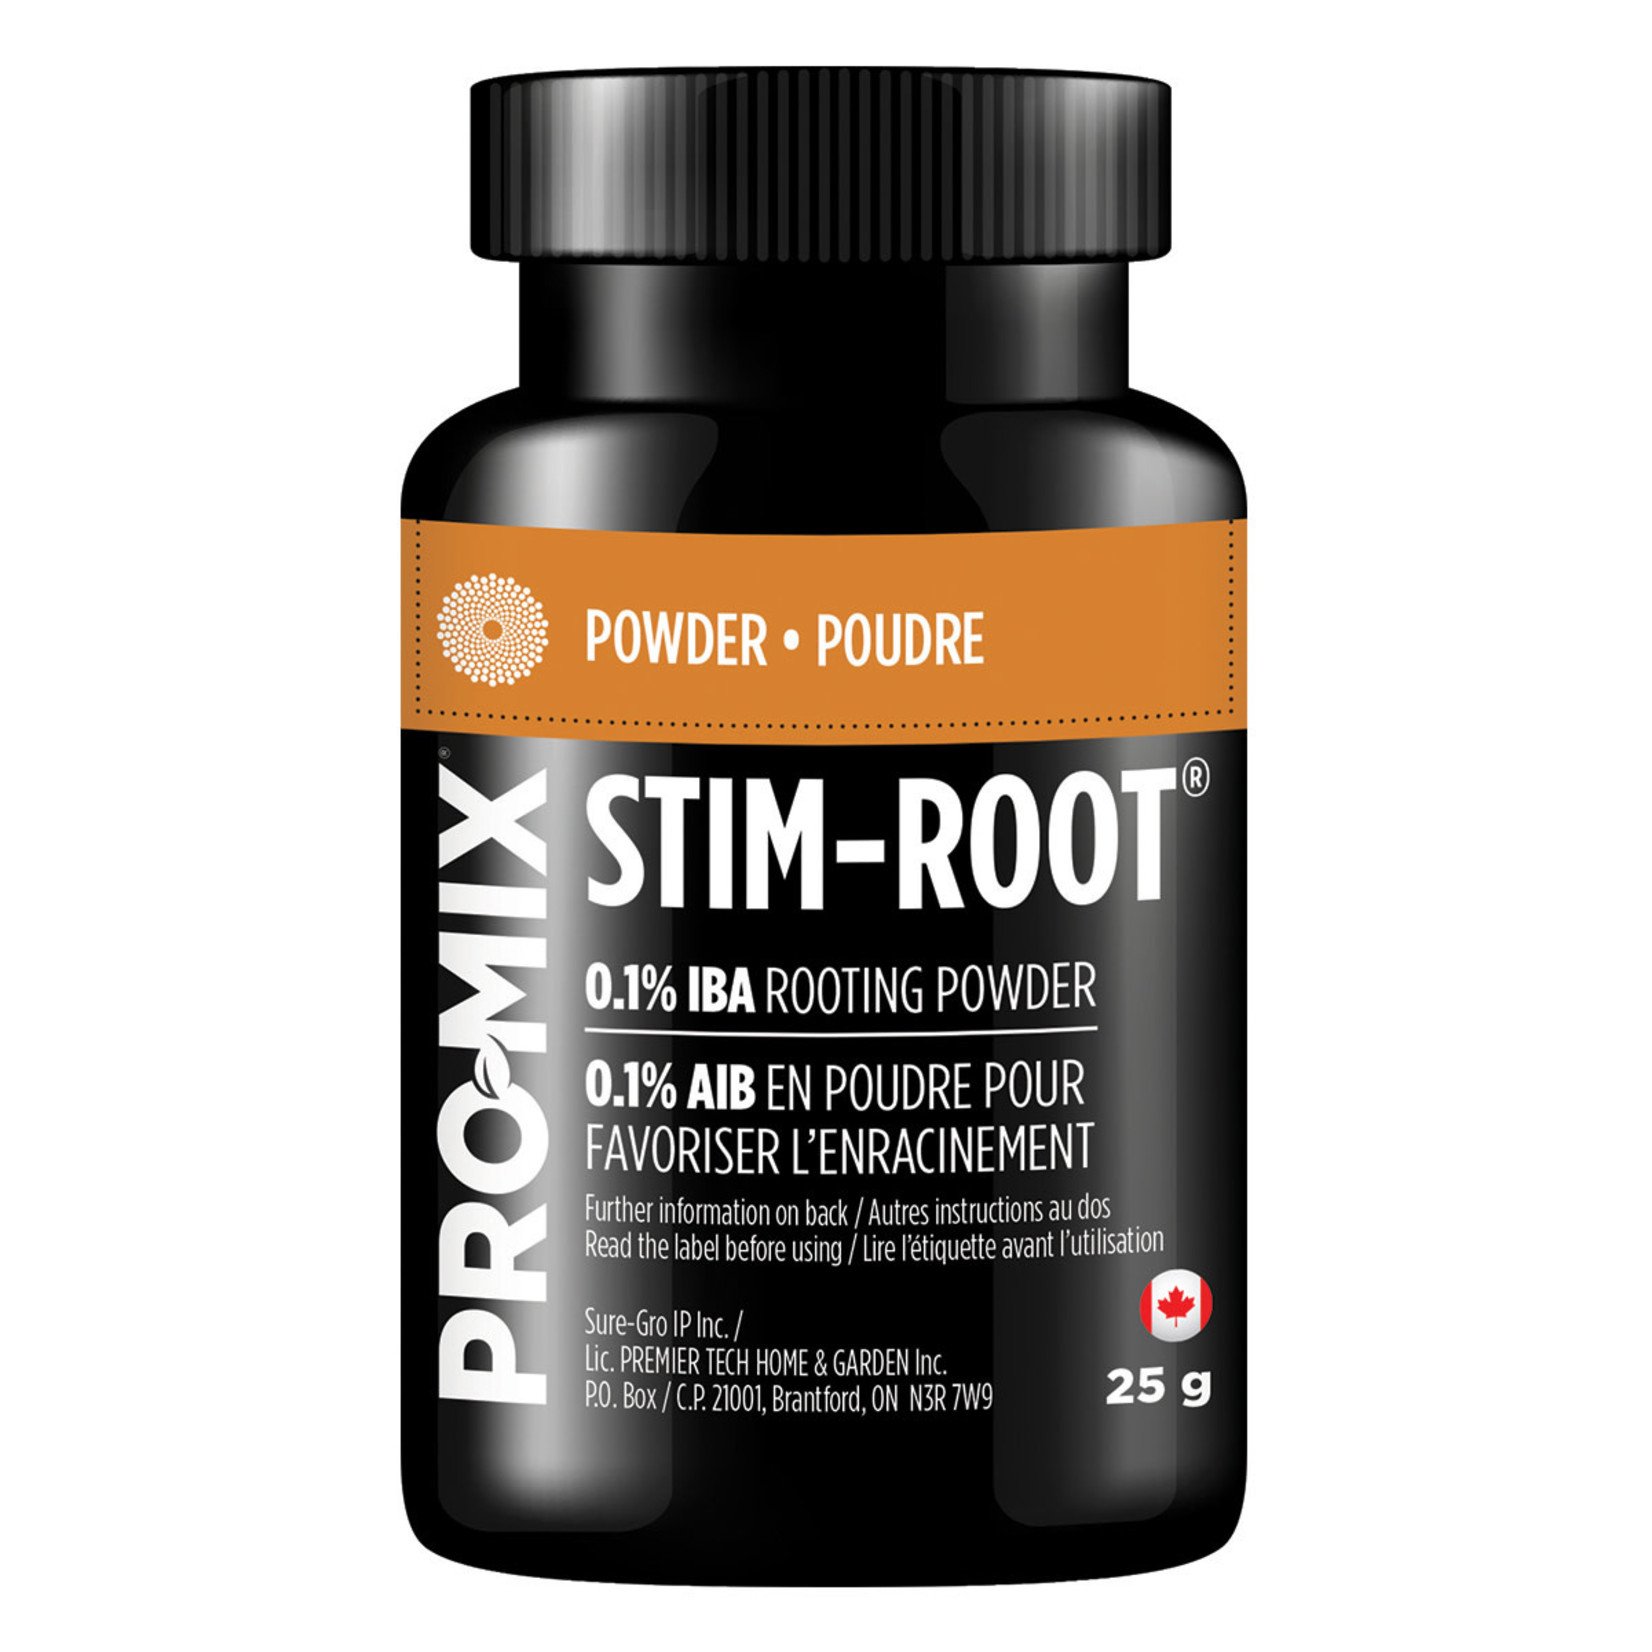 PROMIX PRO-MIX Stim-Root 24g